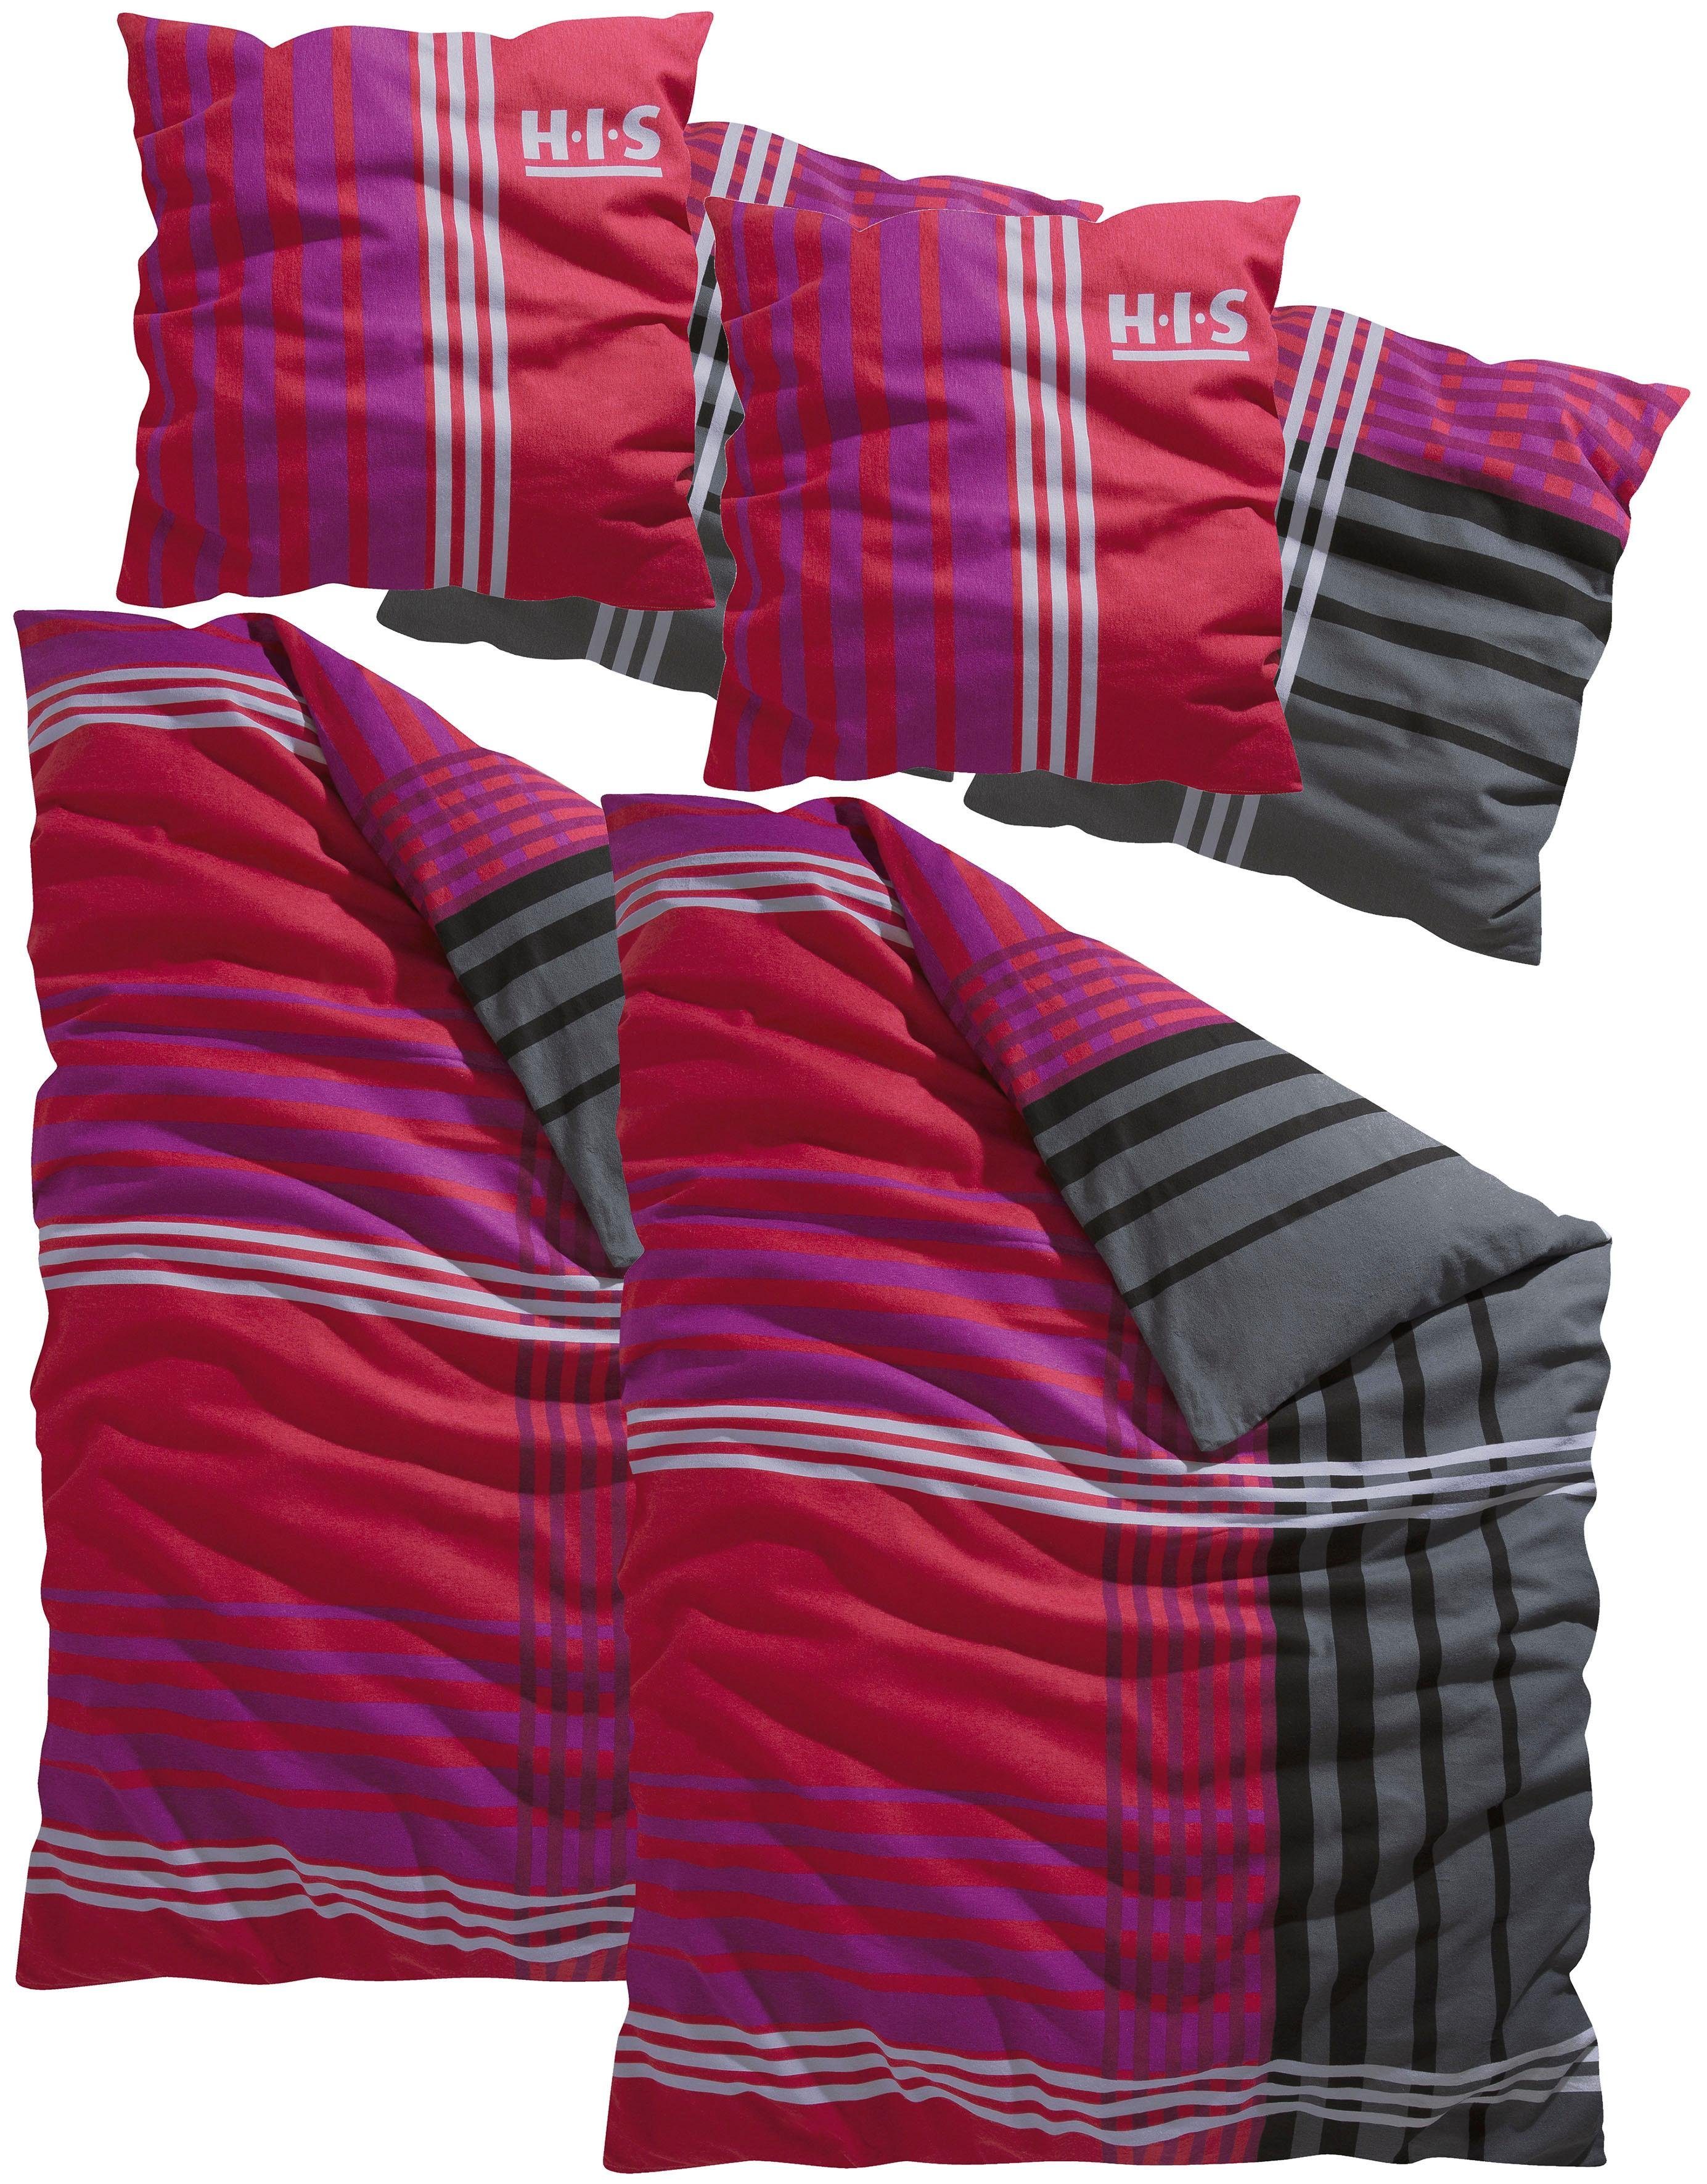 Bettwäsche Philip in Gr. 135x200 oder 155x220 cm, H.I.S, Biber, 4 teilig, sportliche Bettwäsche aus Baumwolle, kariert rot